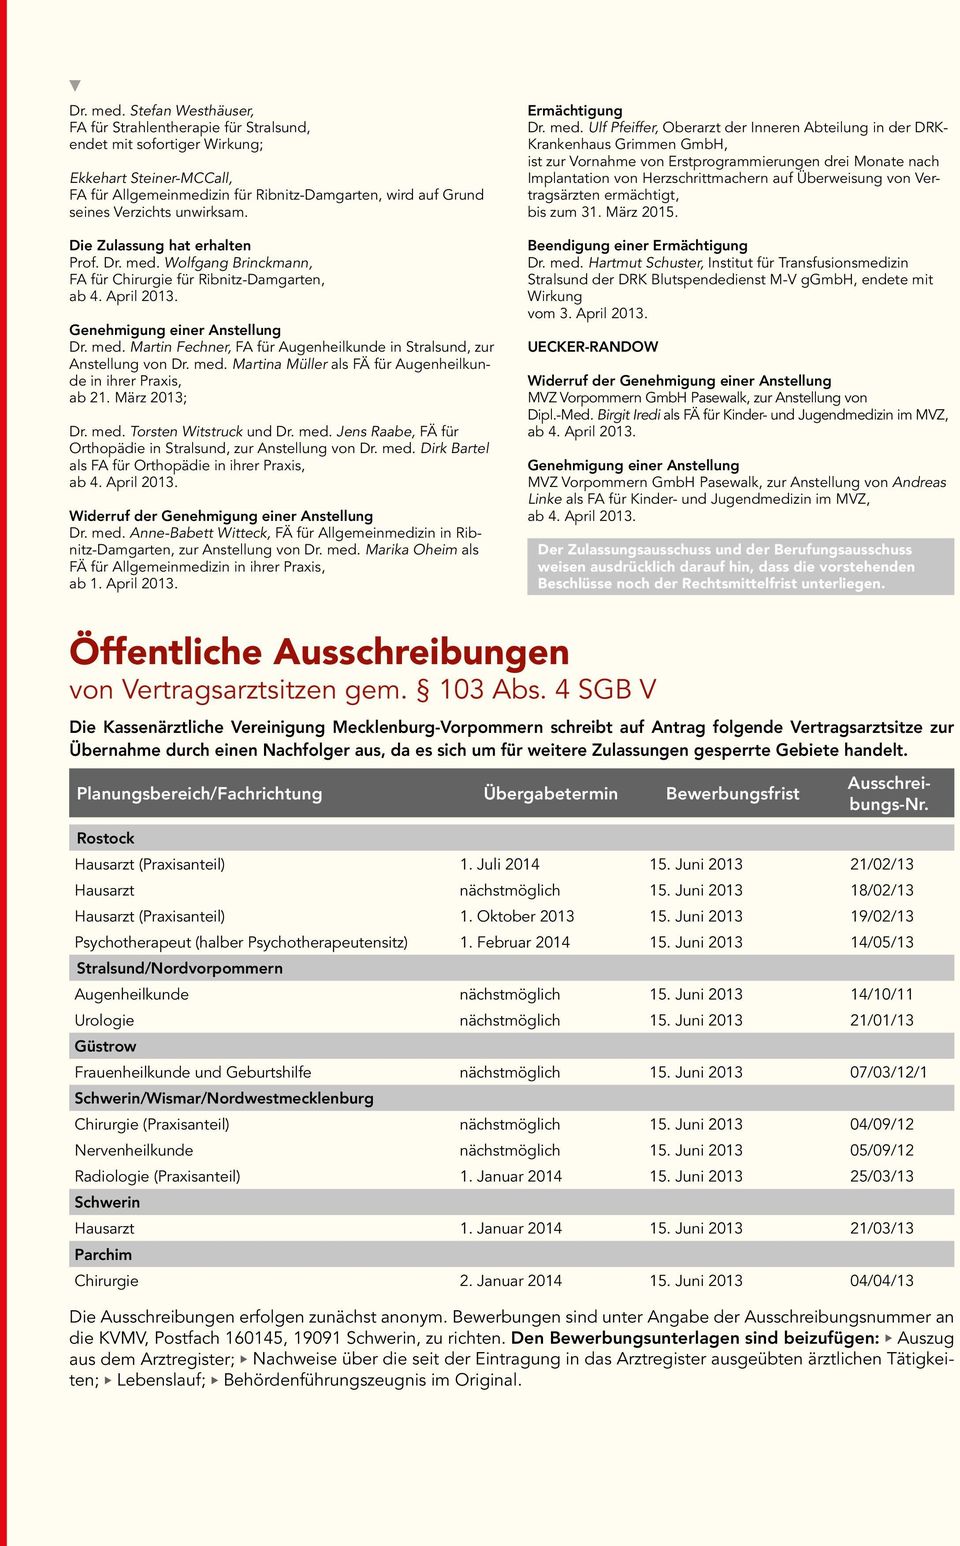 unwirksam. Die Zulassung hat erhalten Prof.  Wolfgang Brinckmann, FA für Chirurgie für Ribnitz-Damgarten, ab 4. April 2013.